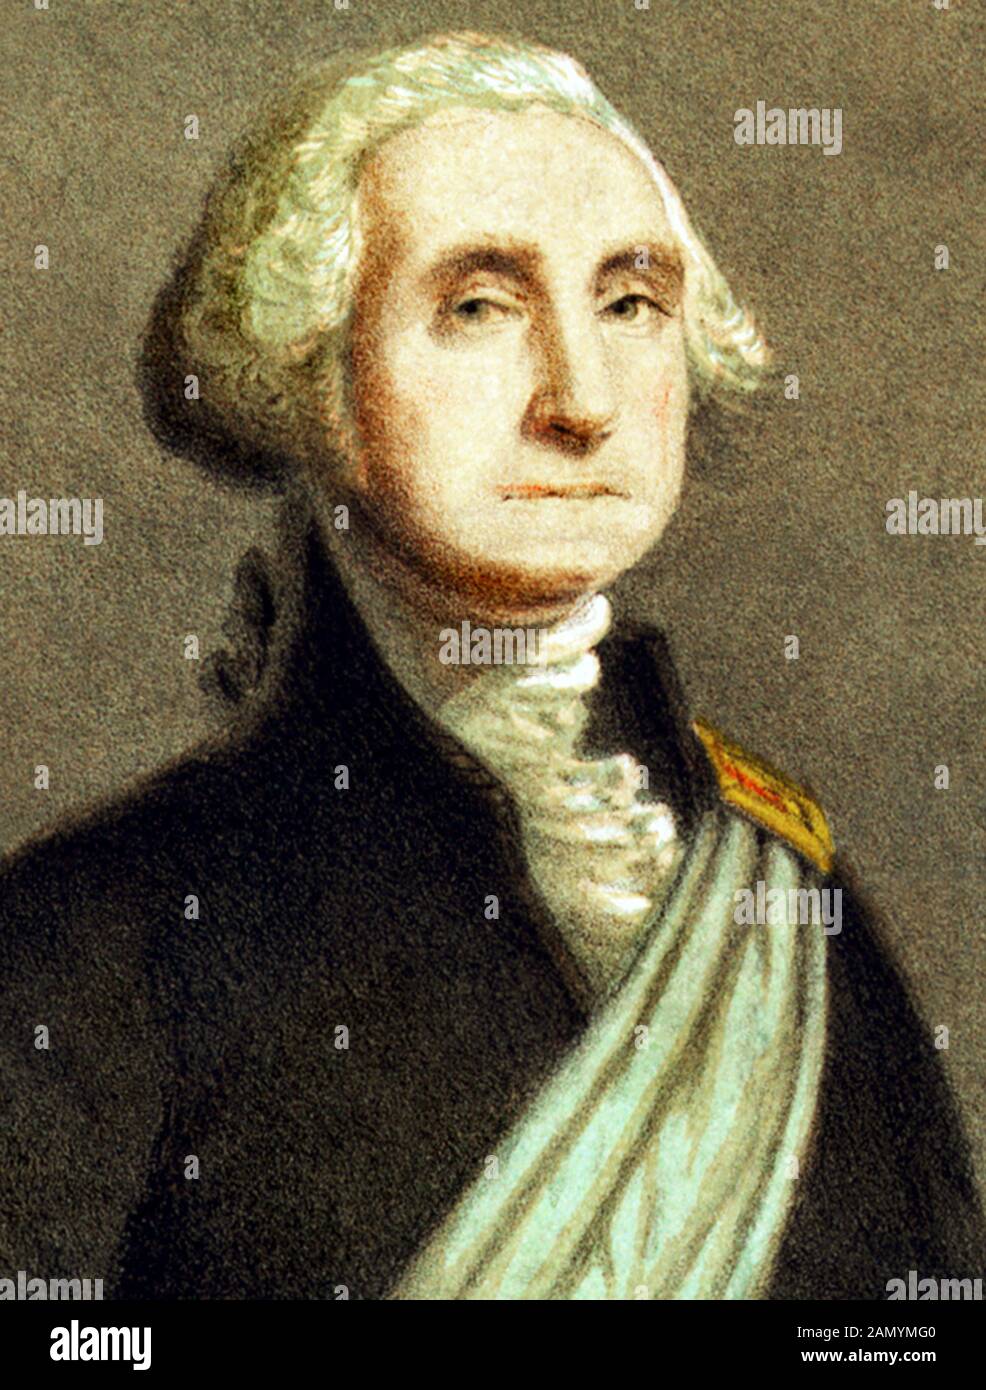 Ritratto d'epoca di George Washington (1732 - 1799) – Comandante dell'esercito continentale nella guerra rivoluzionaria americana / Guerra d'indipendenza (1775 - 1783) e il primo presidente degli Stati Uniti (1789 - 1797). Dettaglio da una stampa del 1866 di Strobridge & Gerlach di Cincinnati. Foto Stock